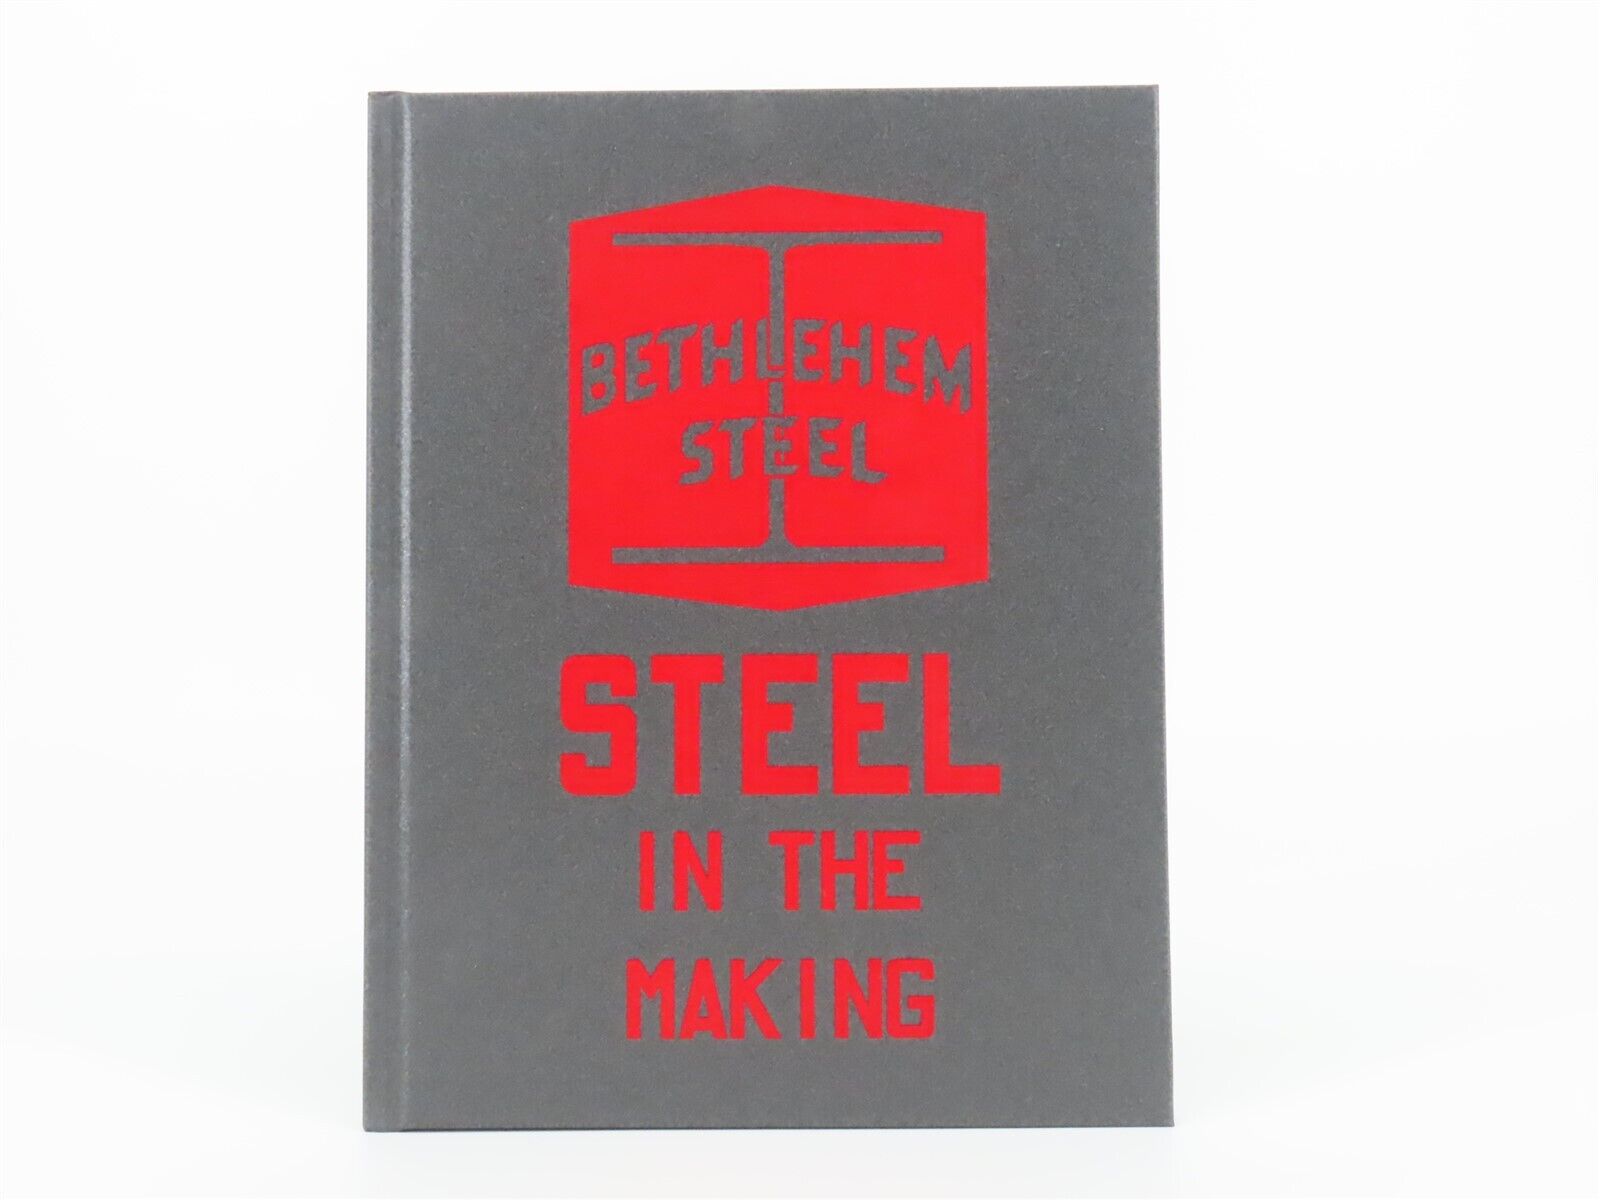 Steel in the Making by Bethlehem Steel ©1942 HC Book